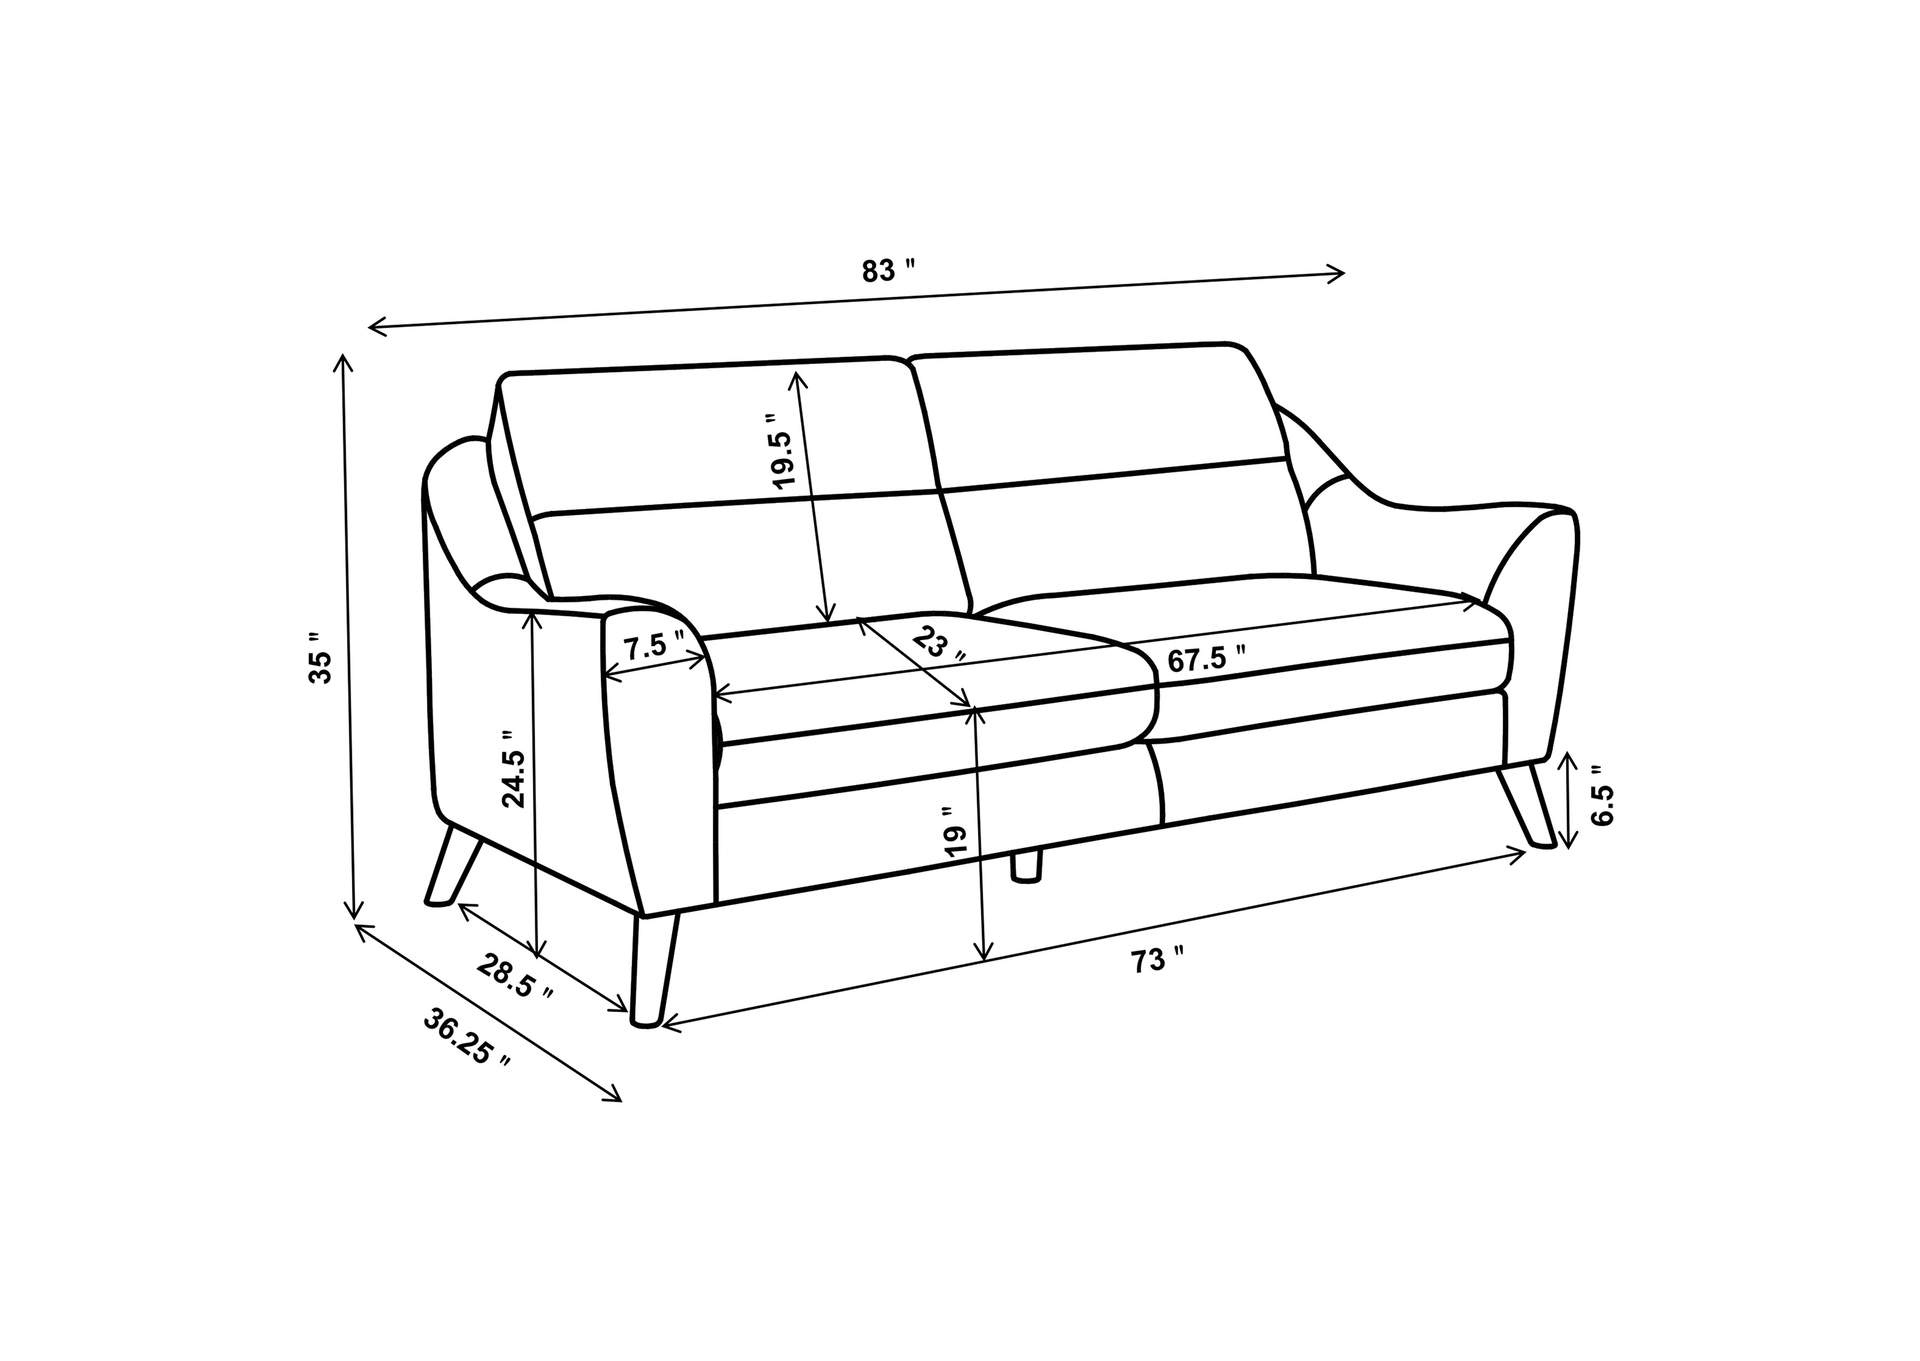 Gano 3-piece Sloped Arm Living Room Set Navy Blue,Coaster Furniture